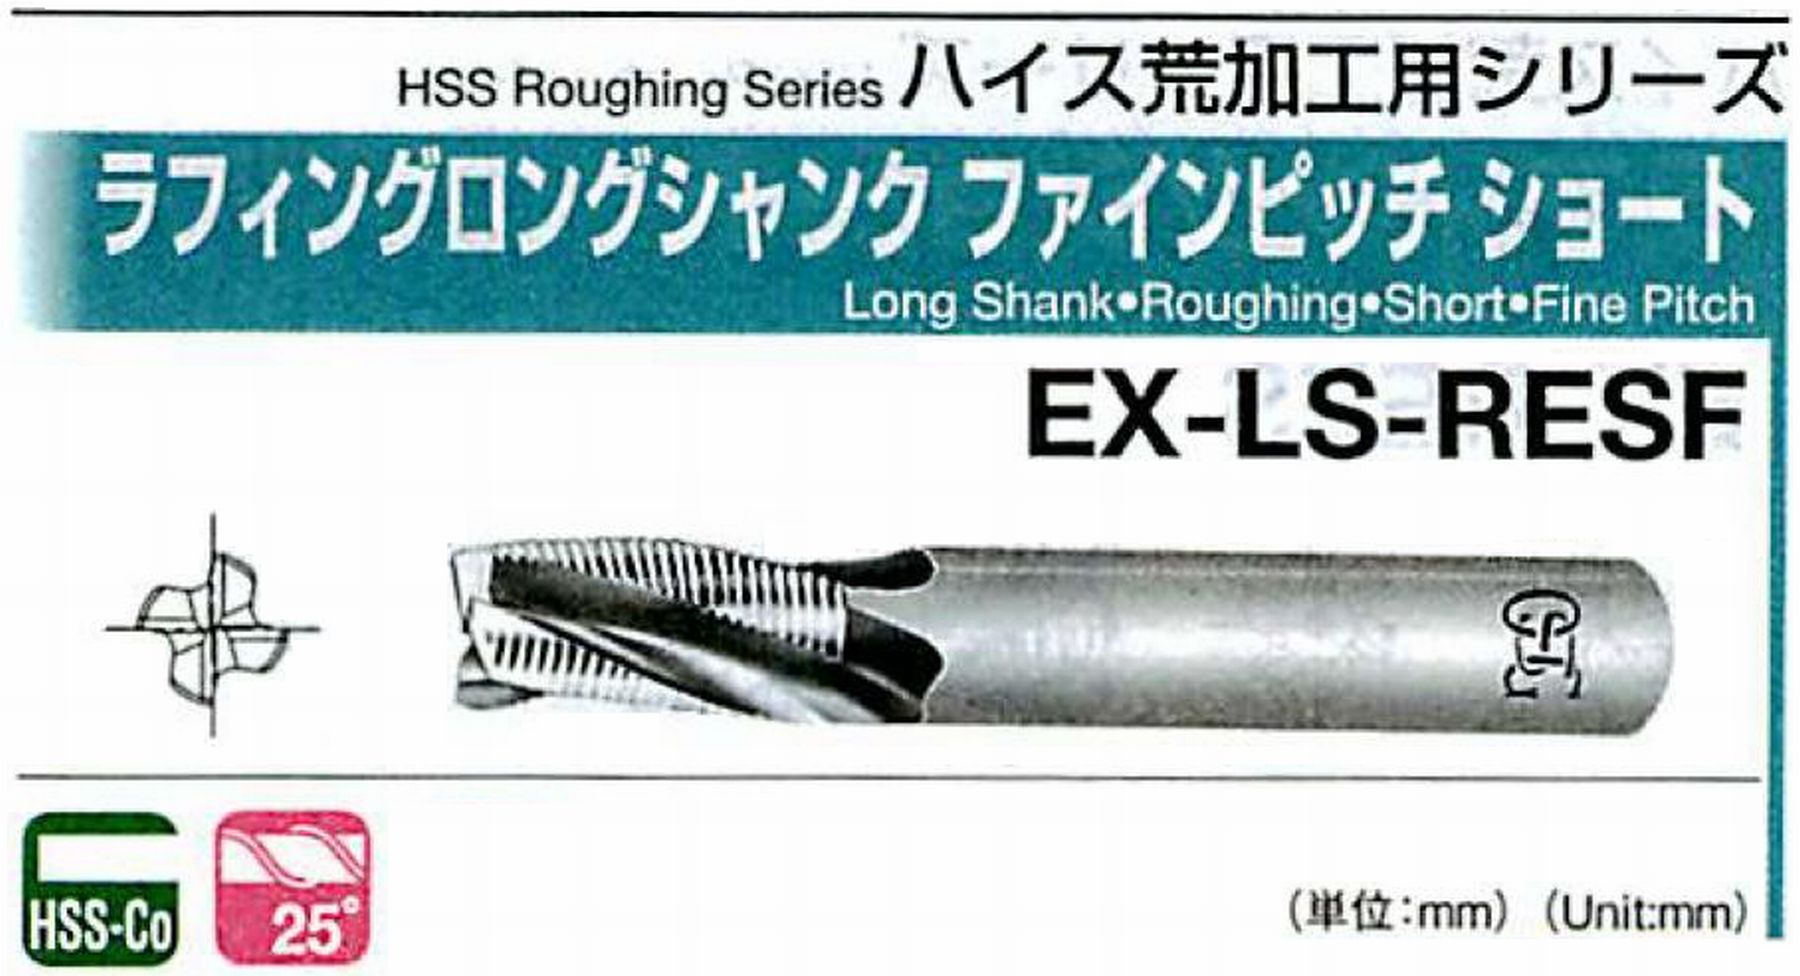 オーエスジー/OSG ラフィングロングシャンク ファインピッチショート EX-LS-RESF 外径24 全長160 刃長45 シャンク径25mm 刃数4